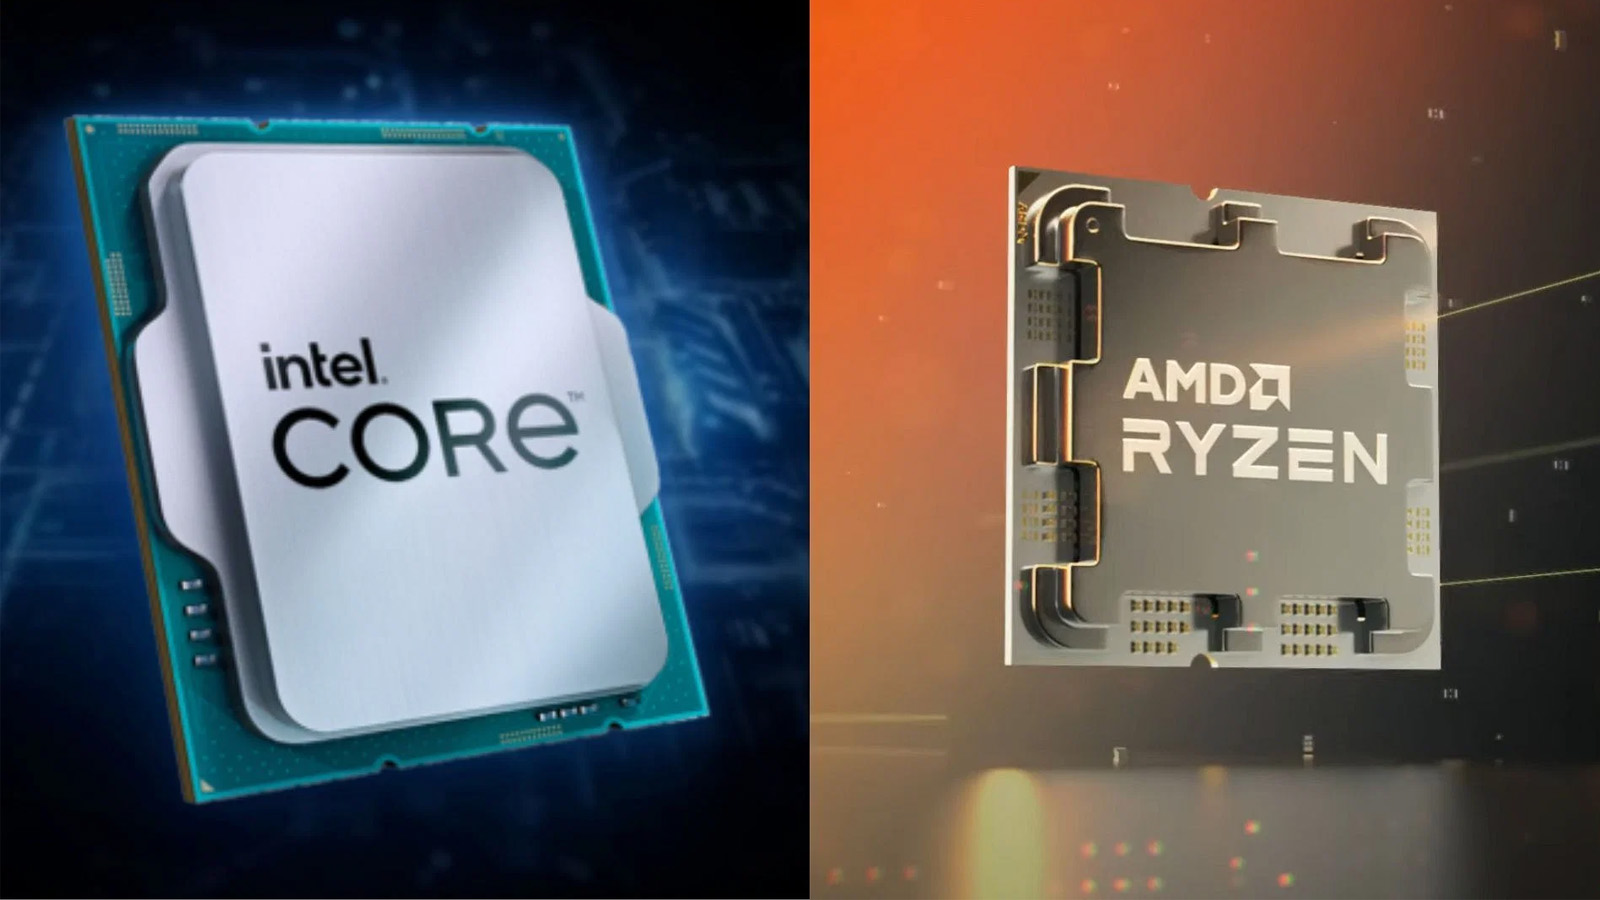 AMD đã nhận được nhiều tích cực từ những người đánh giá chuyên môn (Ảnh: Internet)